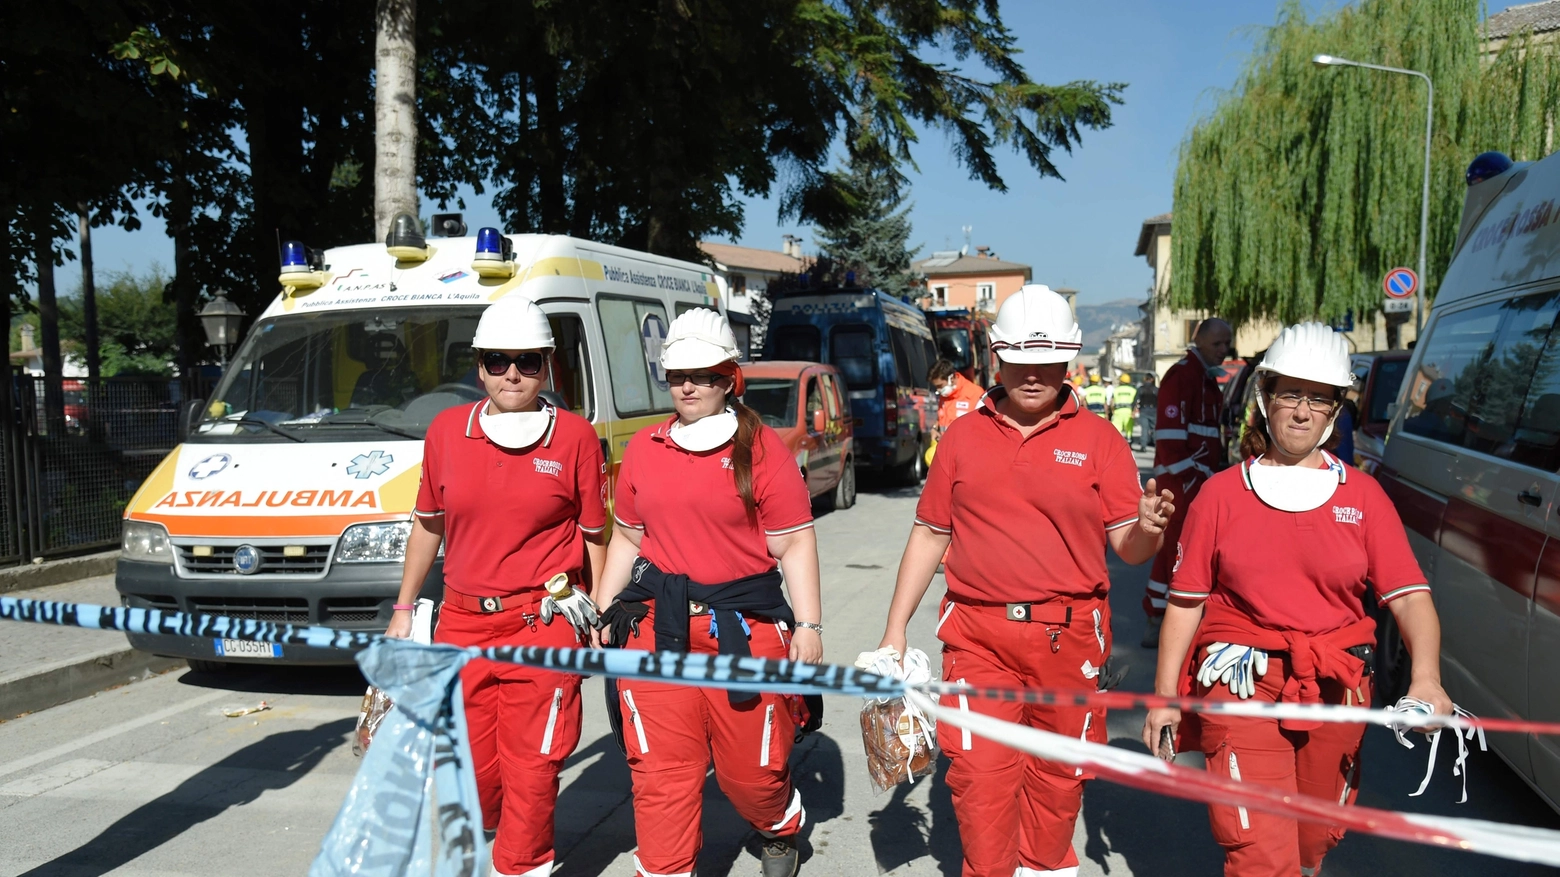 Croce Rossa in azione nelle zone colpite